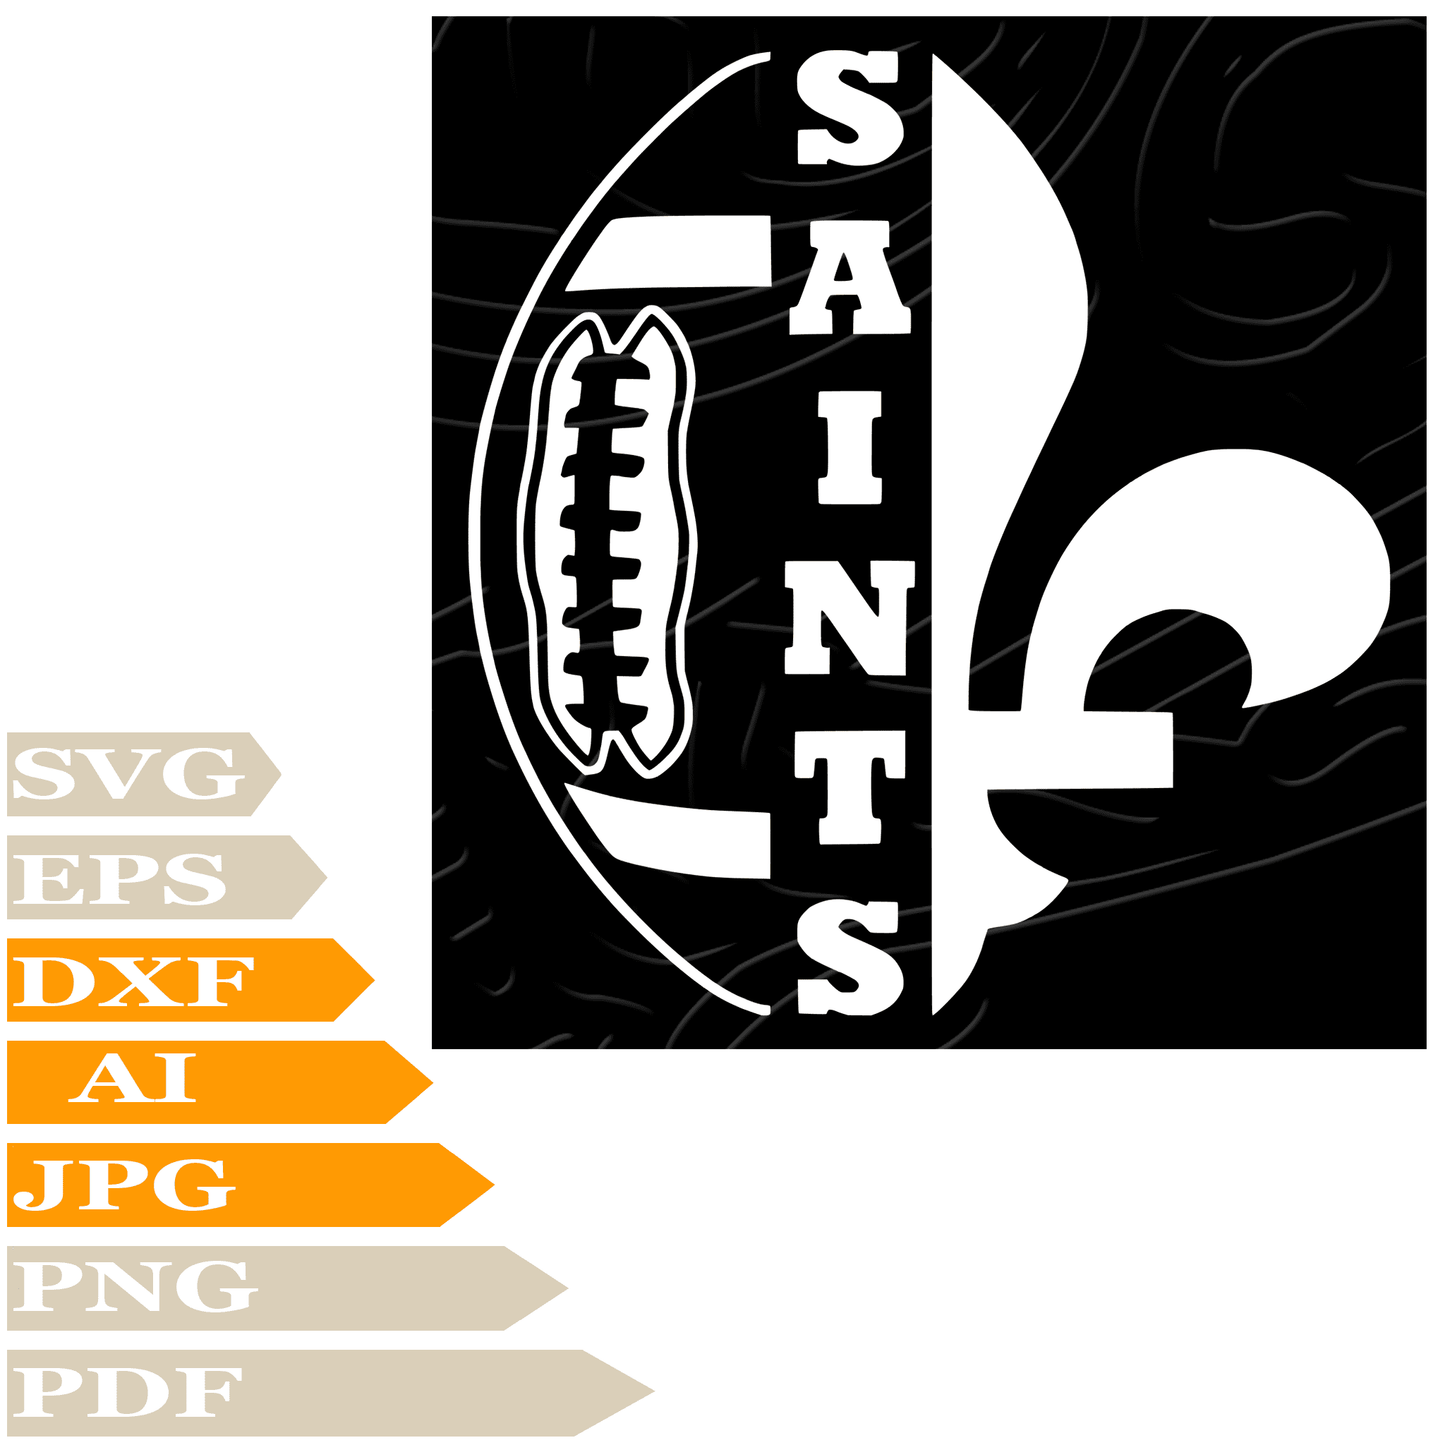 New Orleans Saints Svg File, Saints Football Team Logo Svg Design, Saints Logo Png, New Orleans Saints Vector Graphics, Saints Football Svg For Tattoo, New Orleans Saints Svg For Cricut